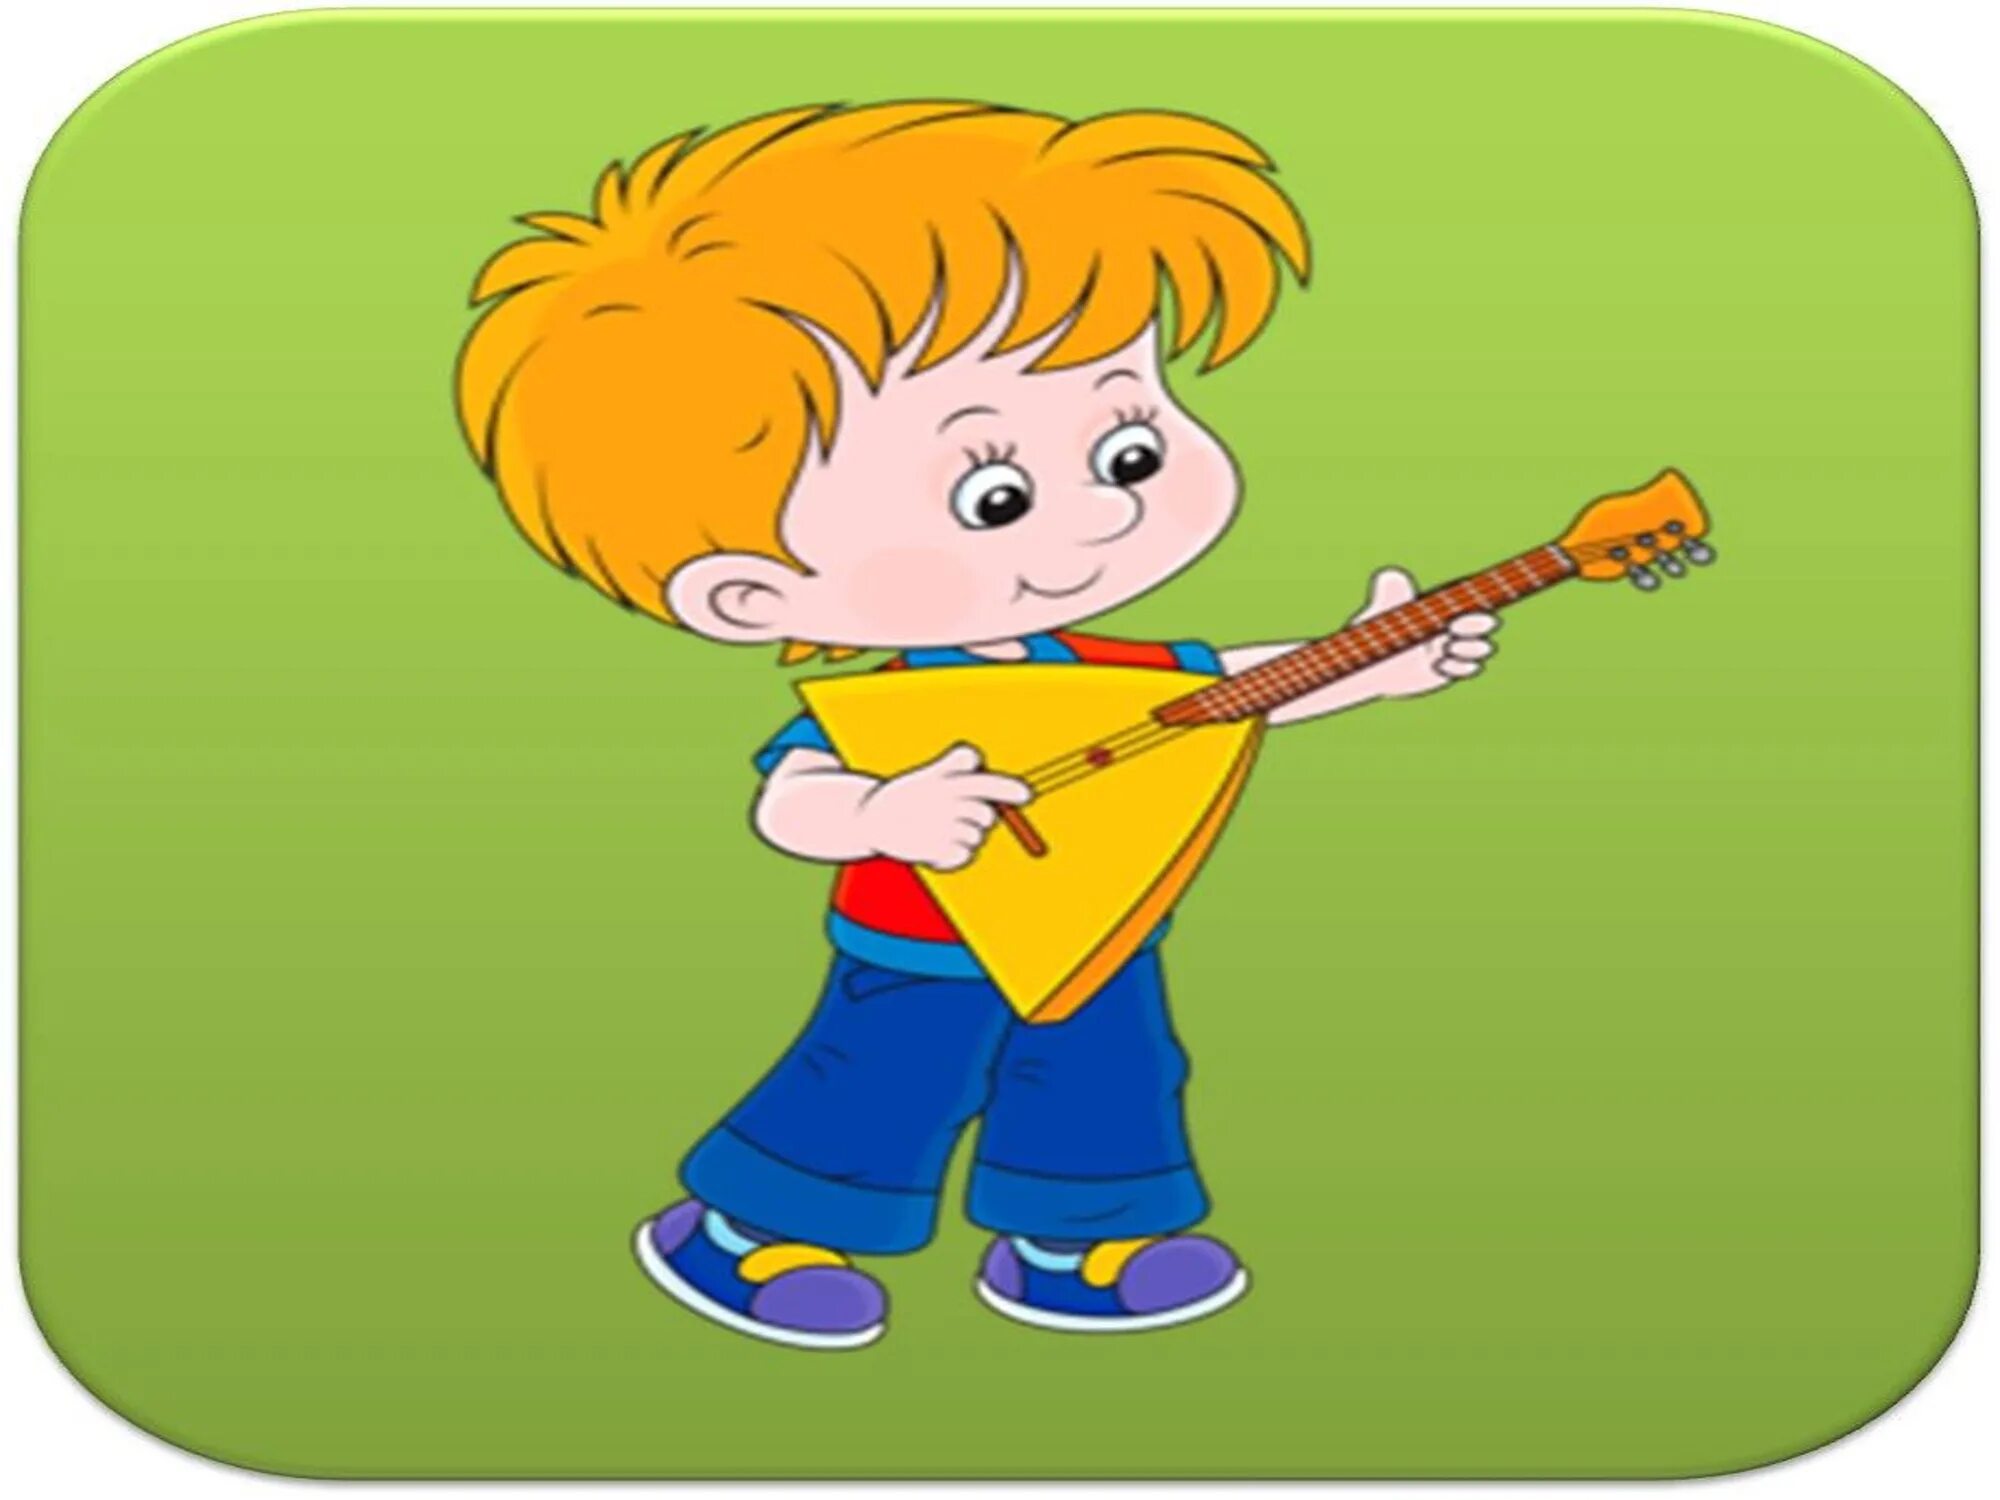 Сюжетно музыкальные игры. Ритмослов музыкально-дидактическая игра. Музыкальные инструменты для детей. Дети играющие на музыкальных инструментах. Музыкальные инструменты иллюстрации.